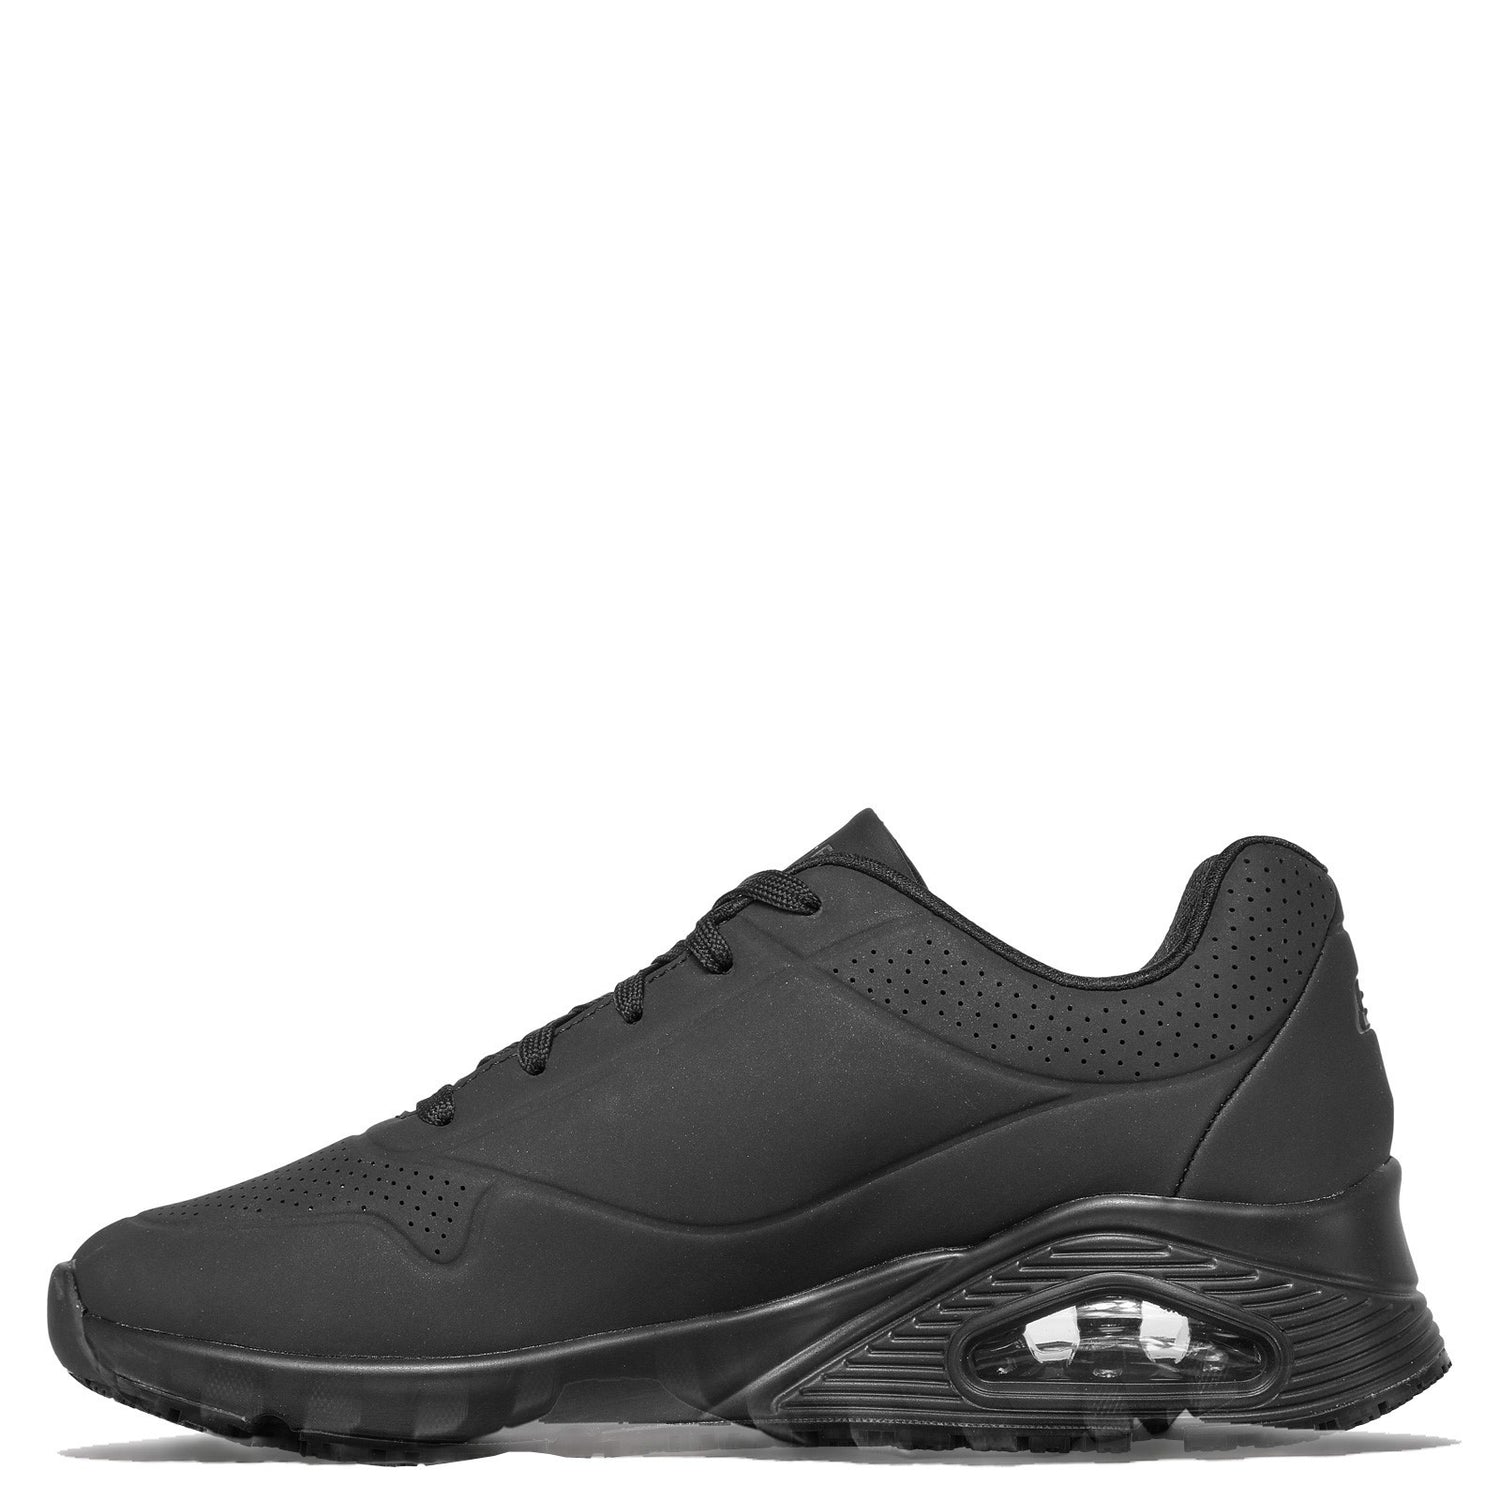 Peltz Shoes  Women's Skechers Relaxed Fit: Uno SR Work Shoe - Wide Width BLACK 108021W-BLK